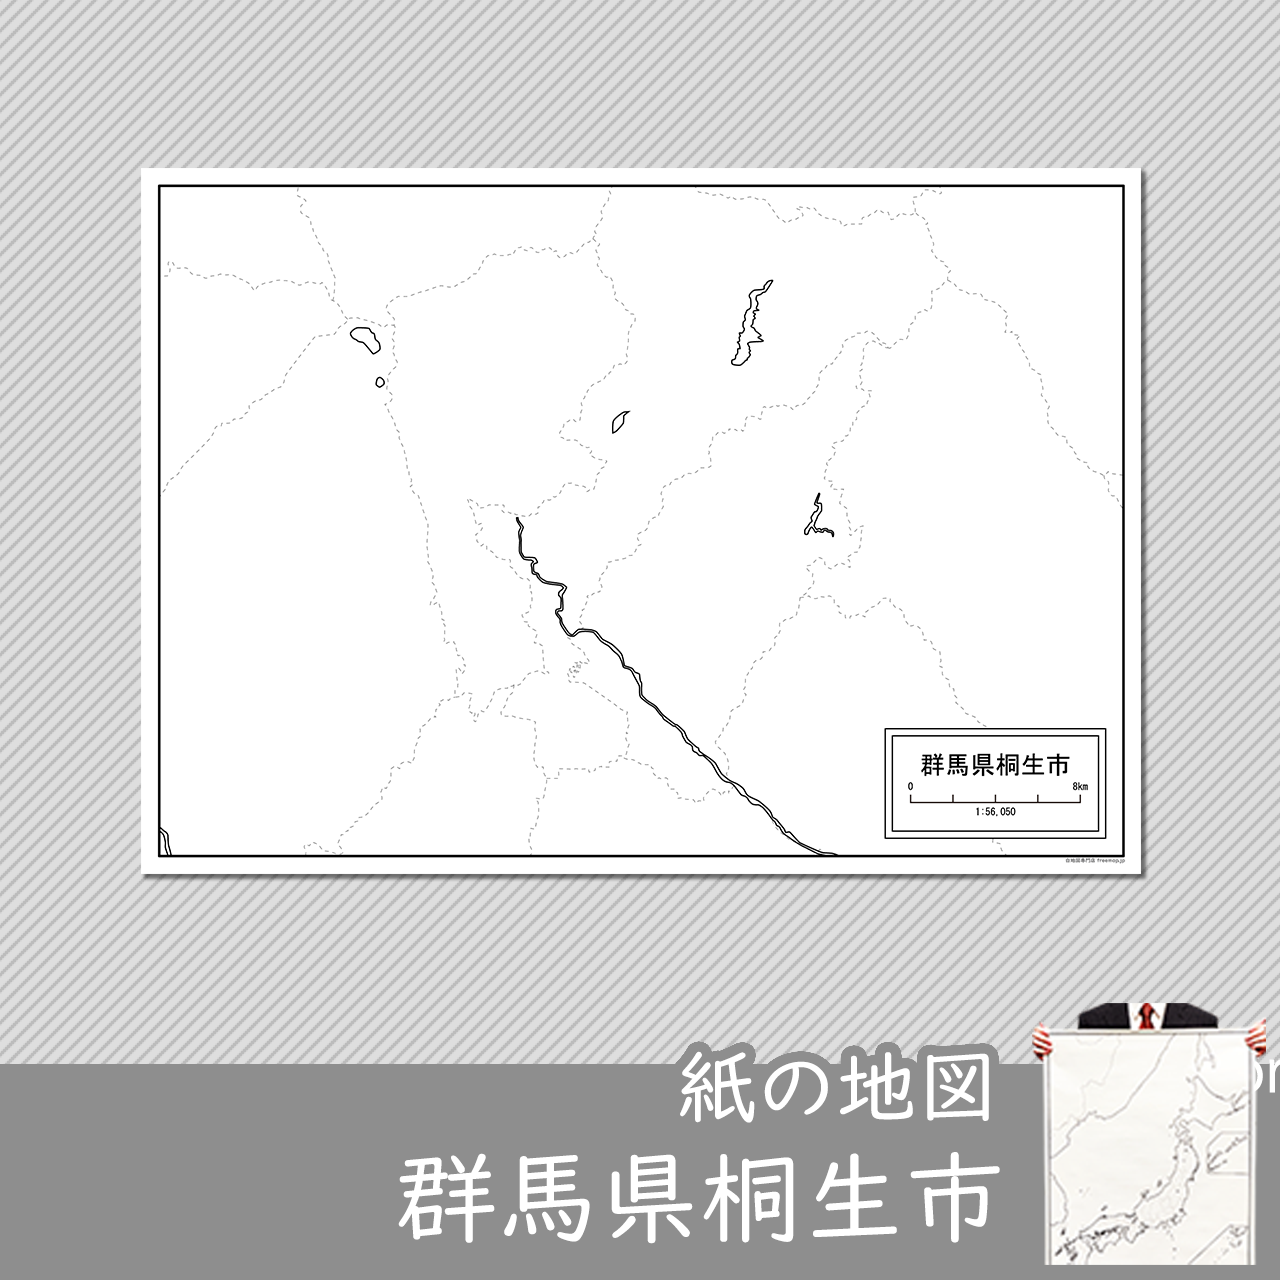 桐生市の紙の白地図のサムネイル